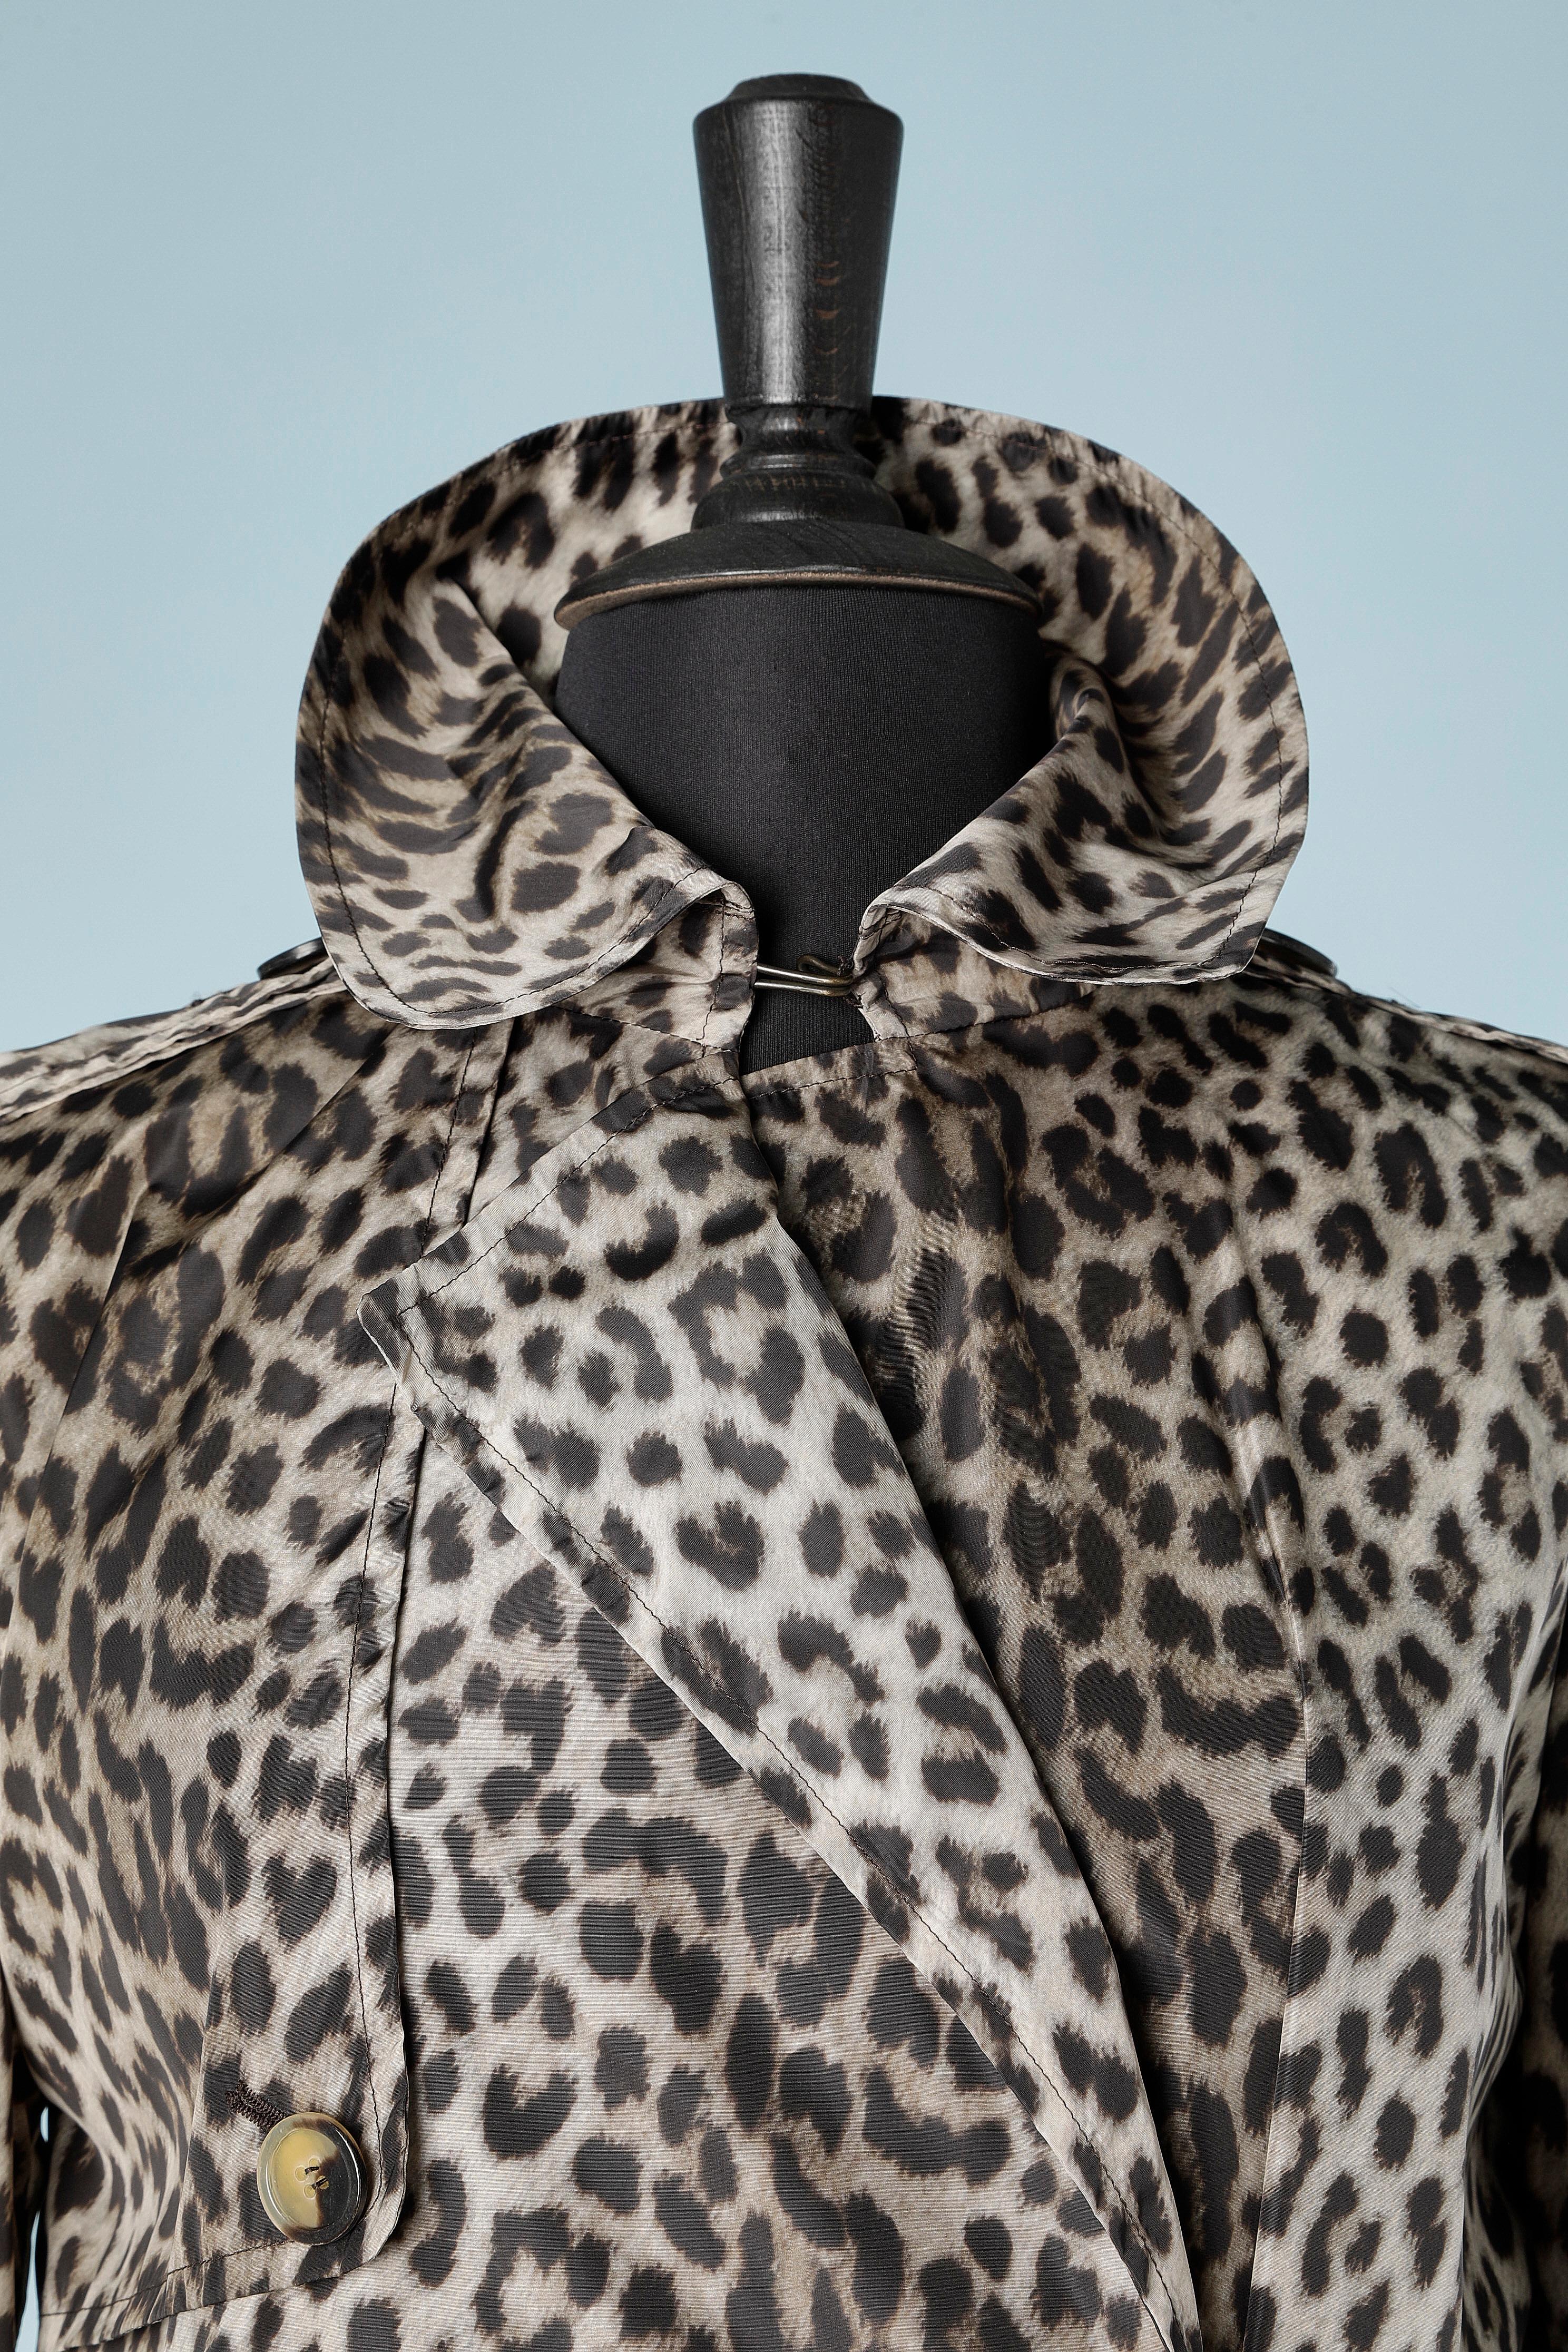 Trench-coat en nylon imprimé léopard à double boutonnage, non doublé. 
TAILLE M/L 